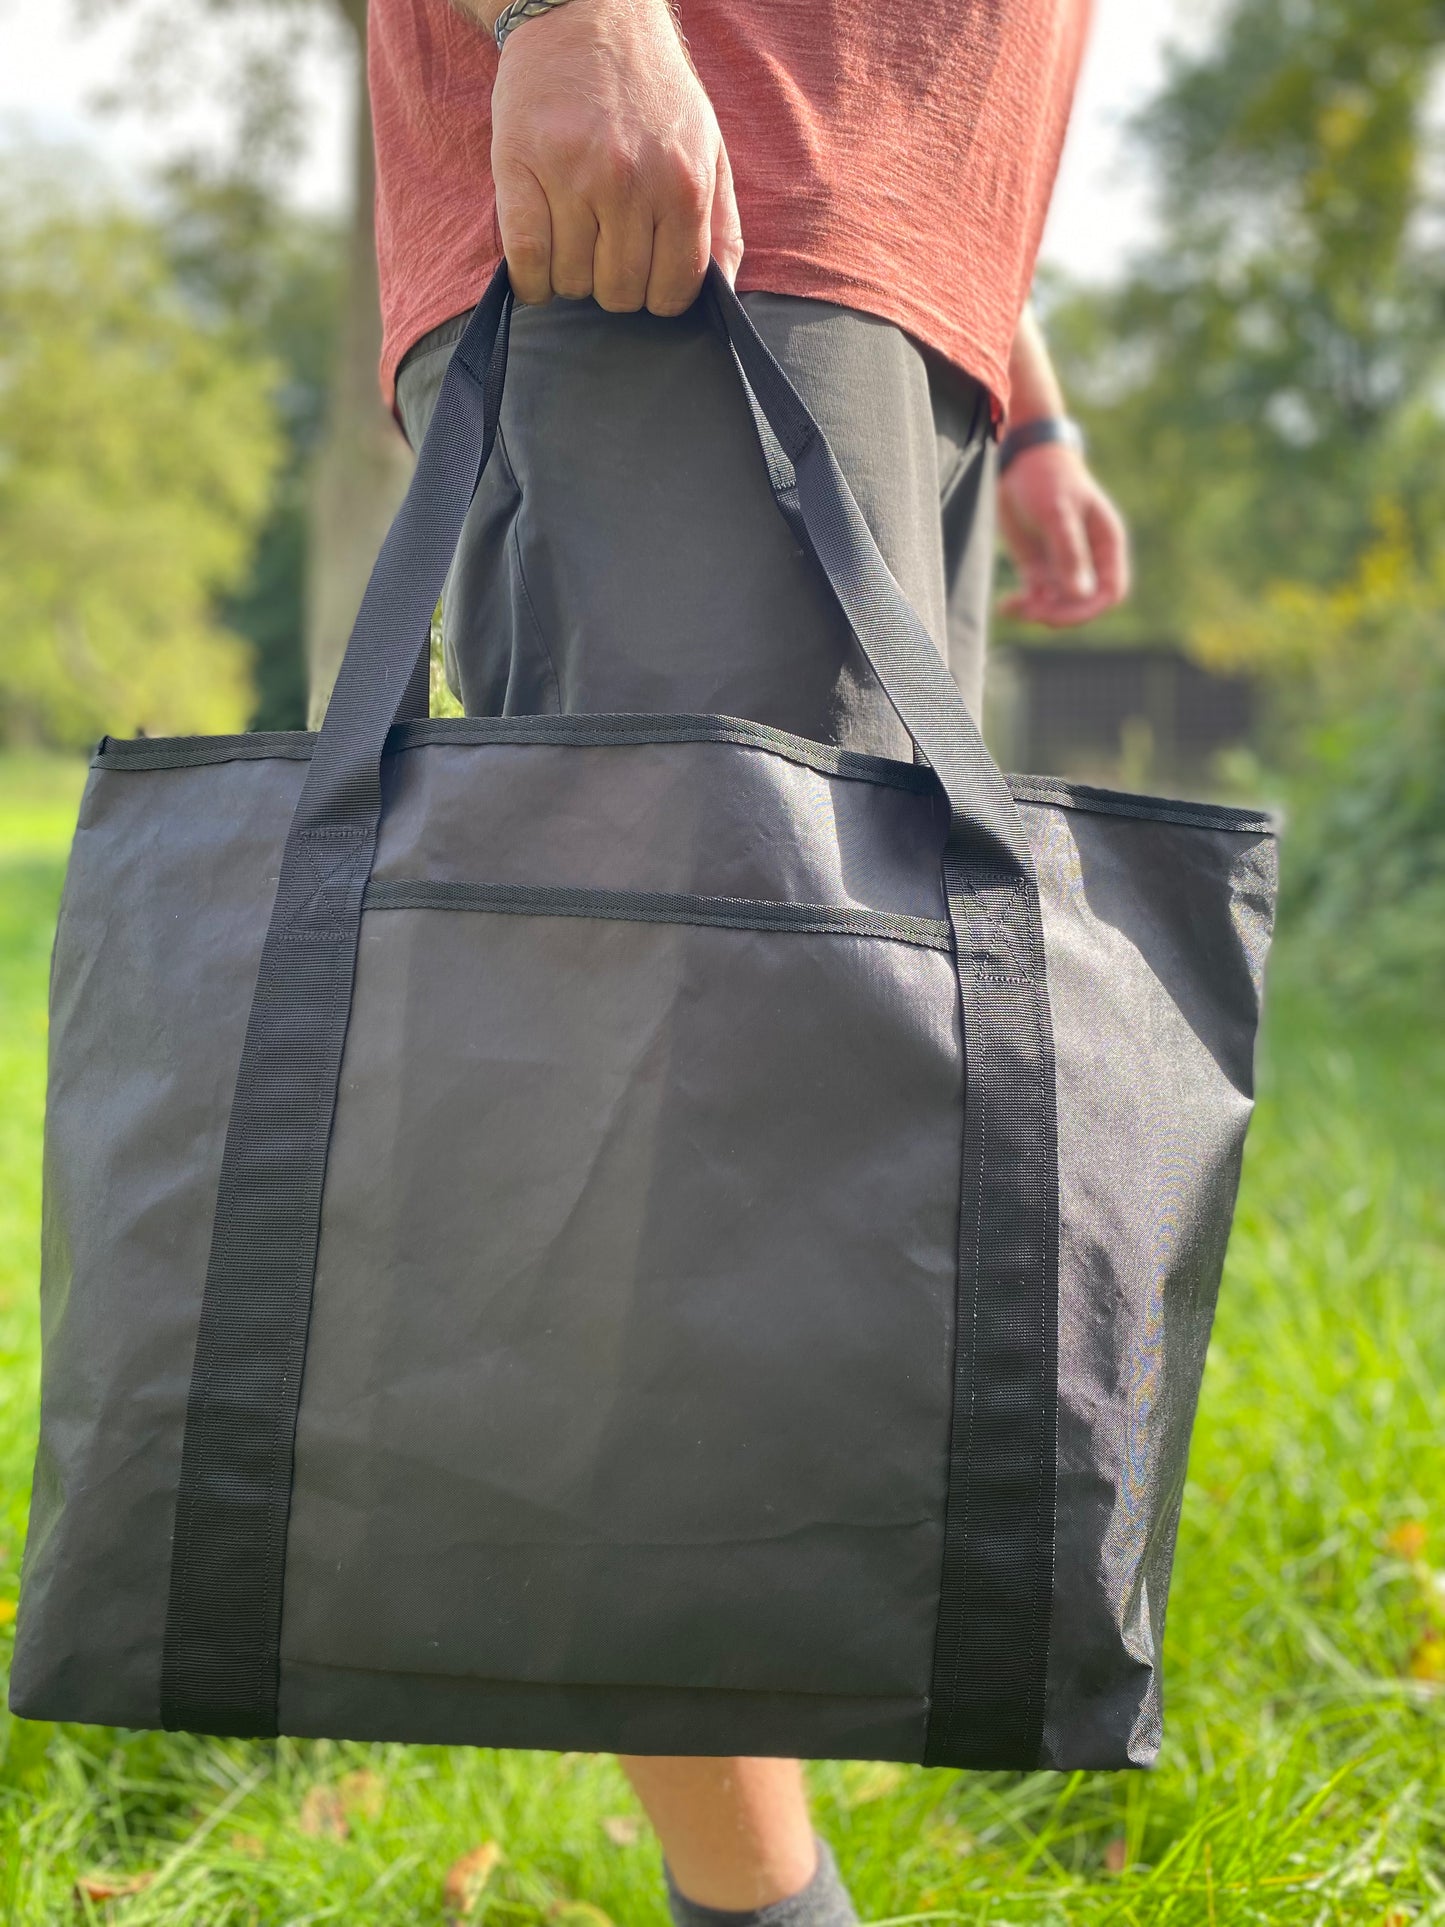 Die schwarze Tragetasche aus Ecopak wird von einem Mann getragen, der auf einer Wiese steht.